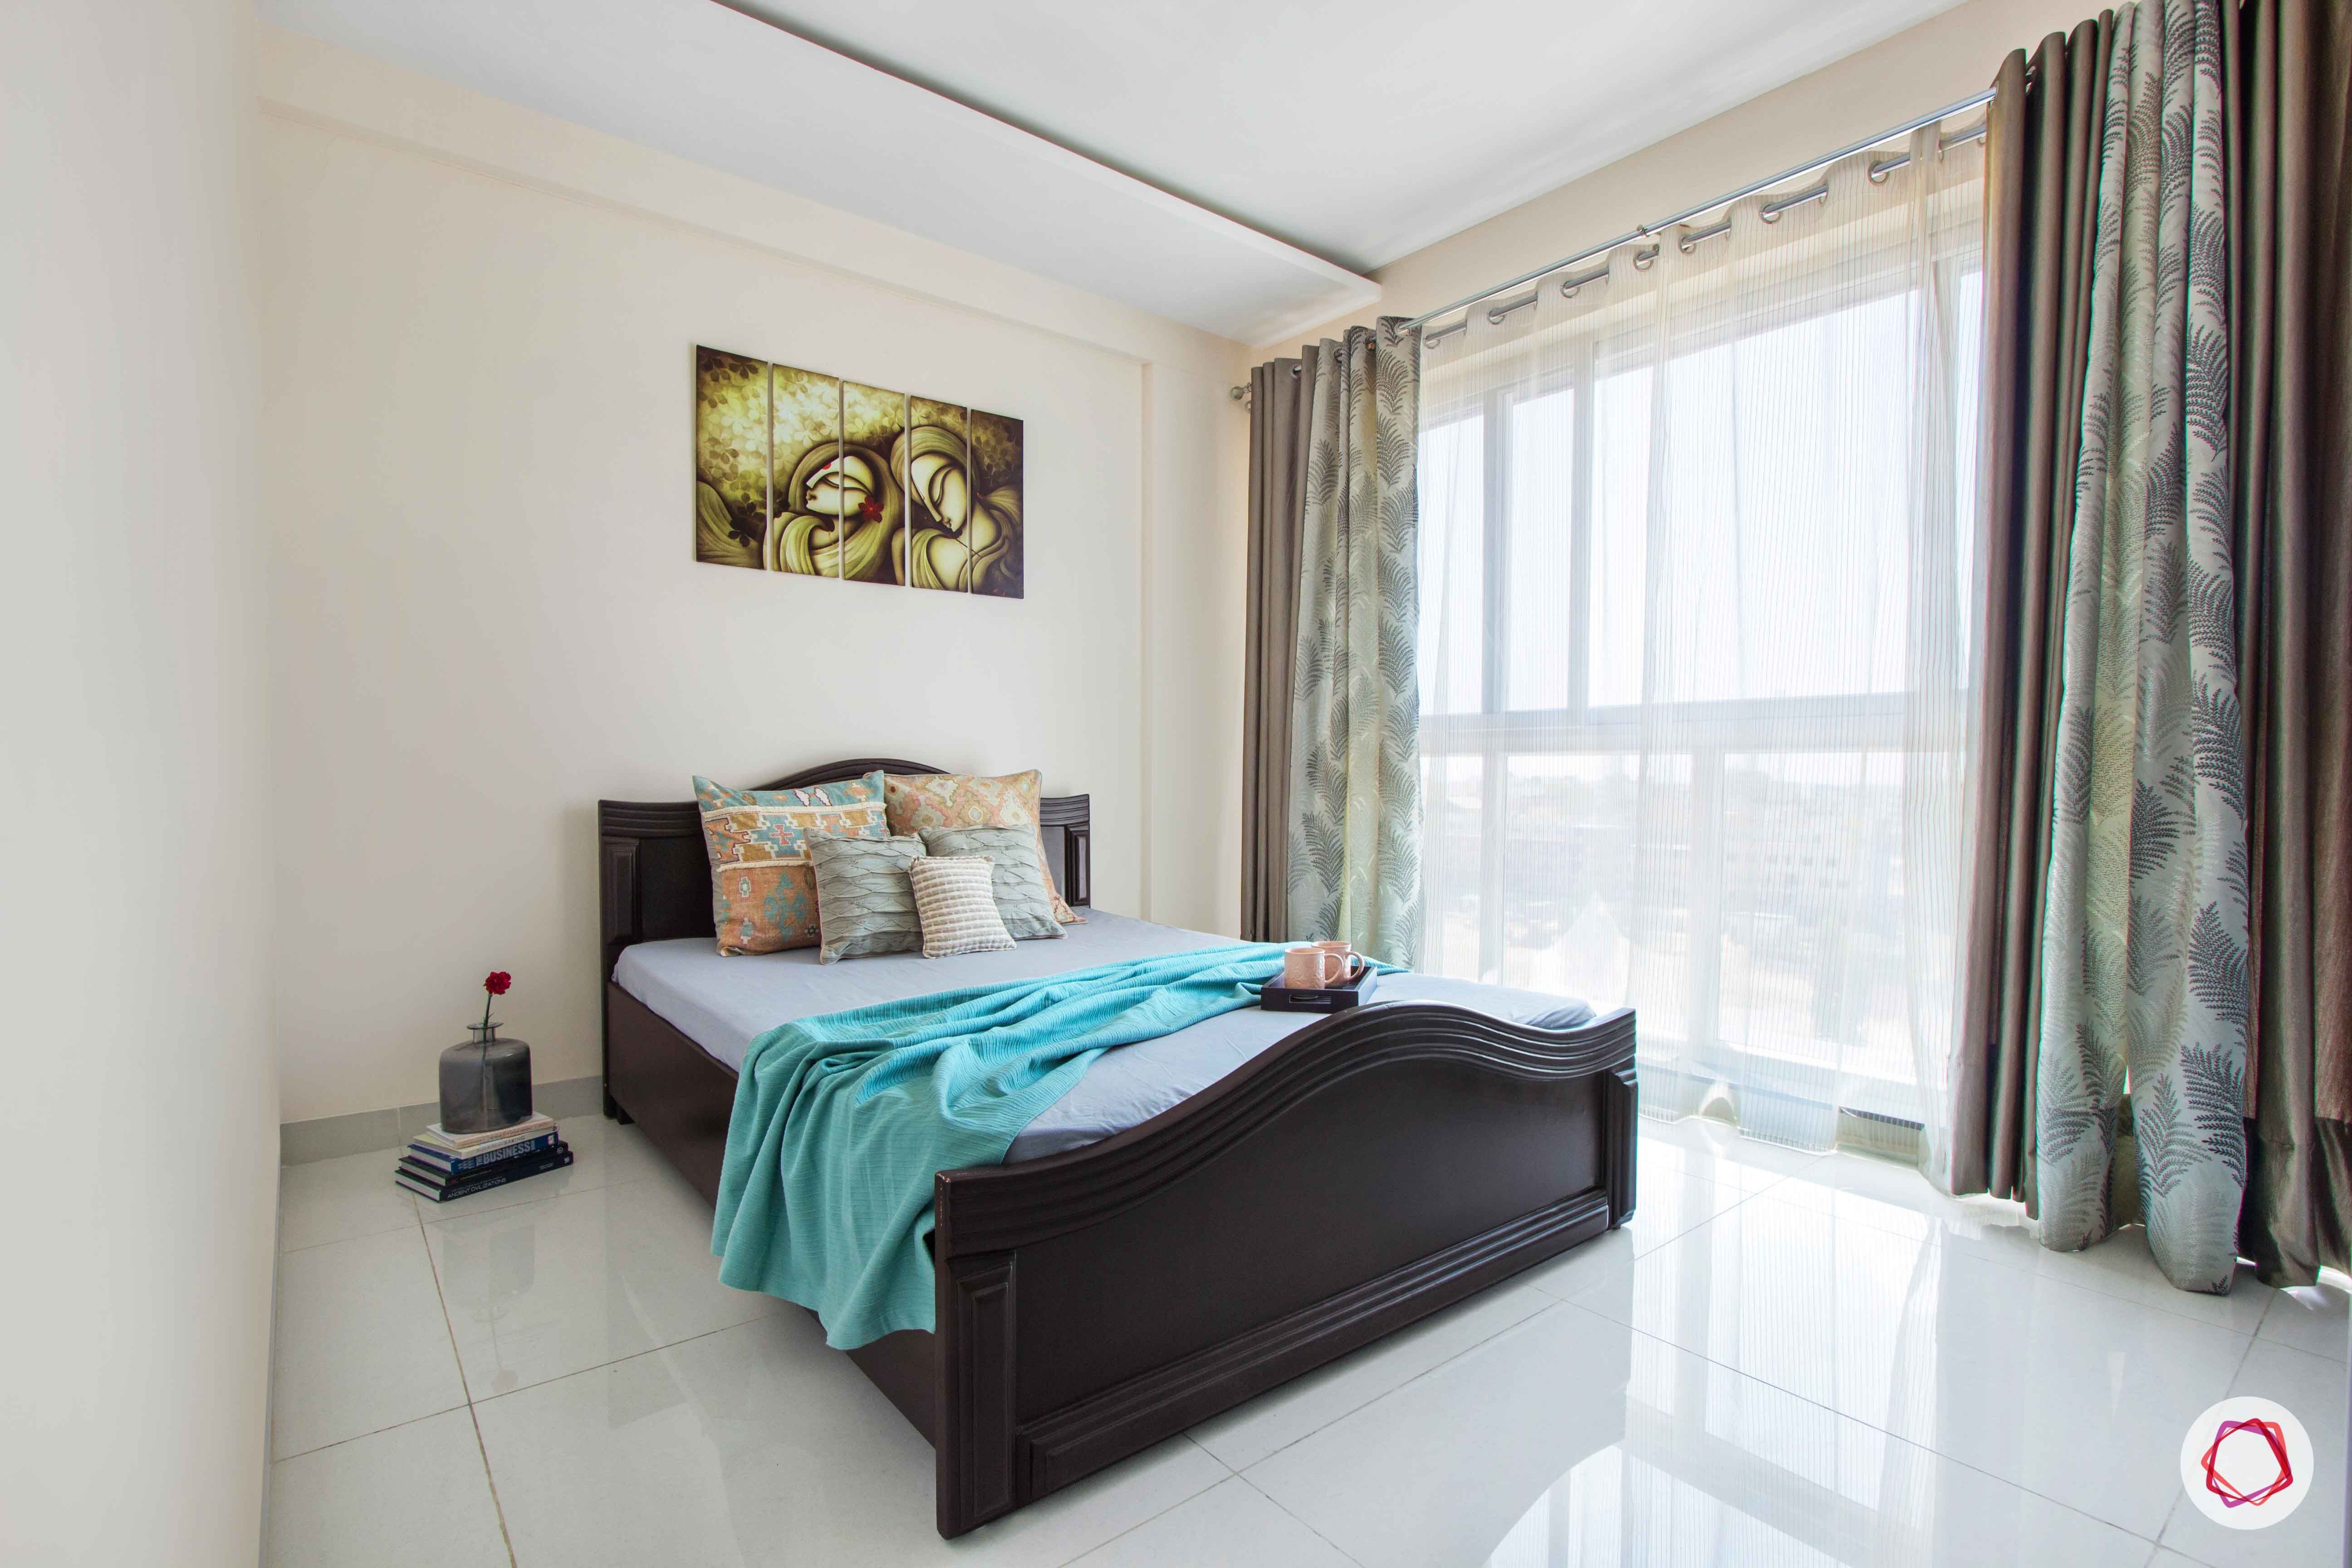 snn raj greenbay-guest bedroom-simple room-sheer drapes